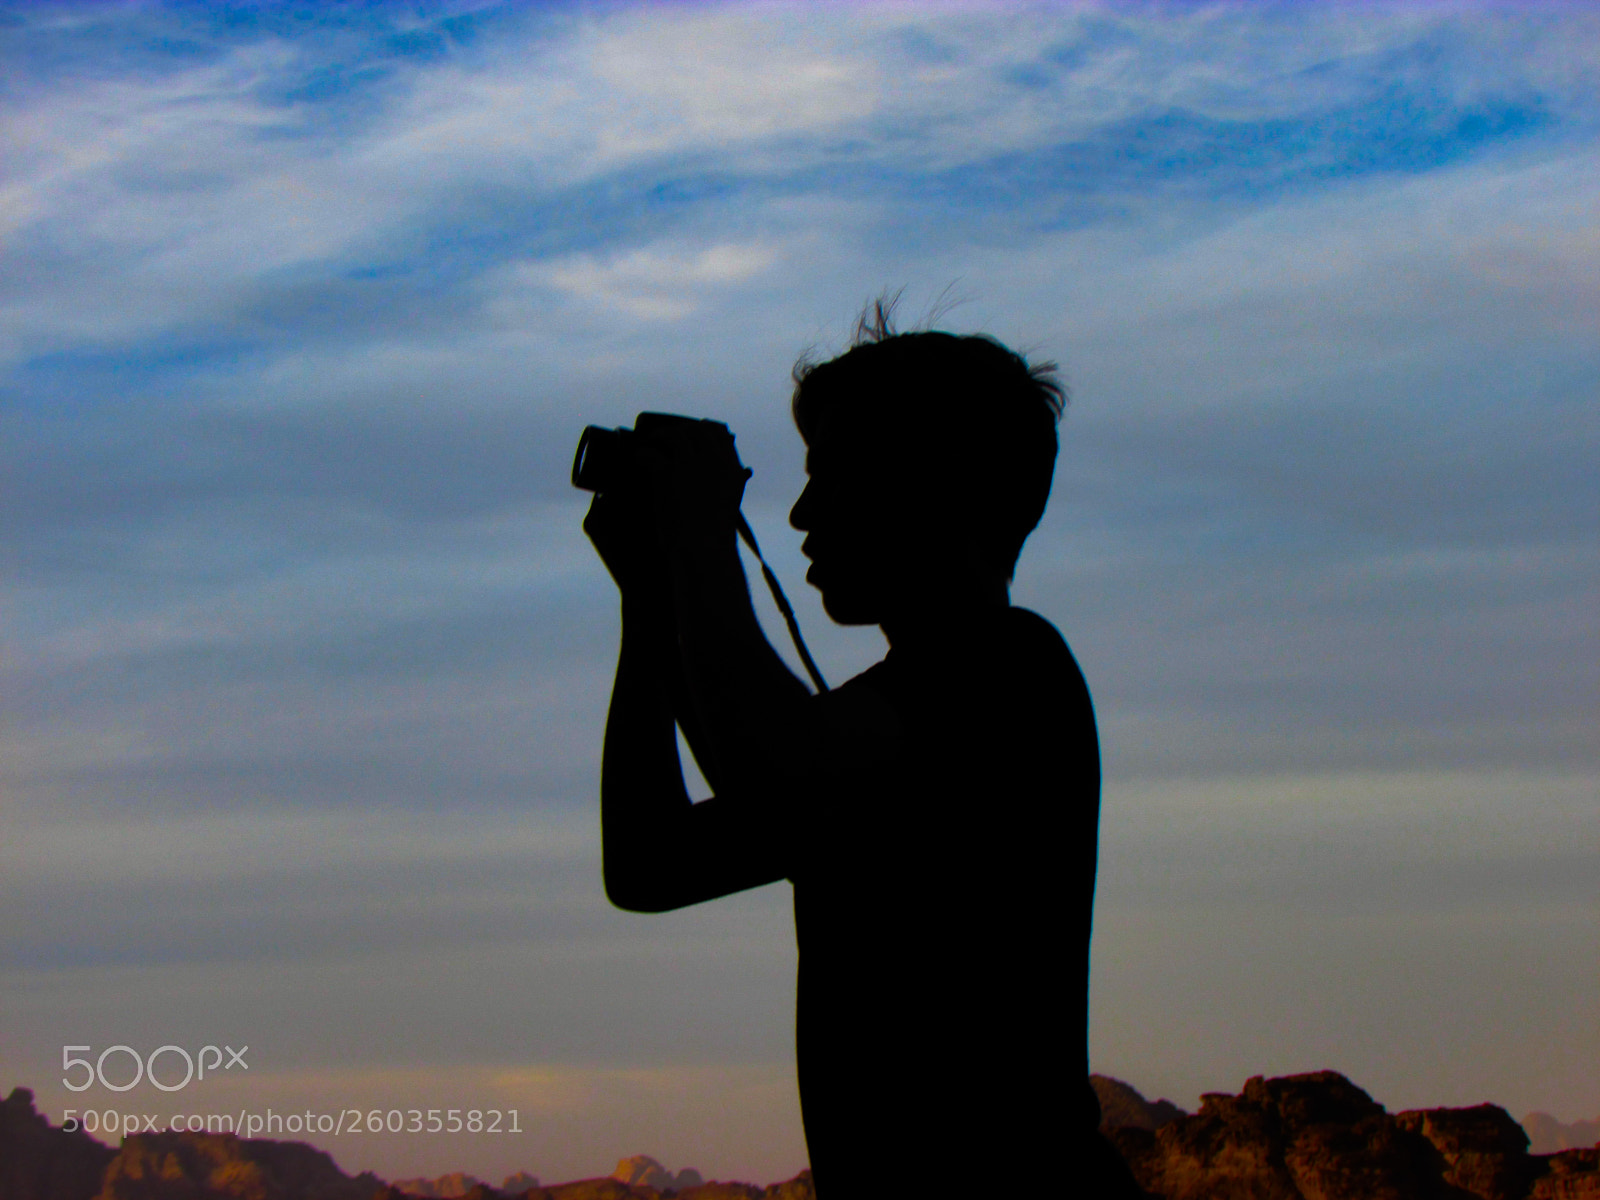 Canon PowerShot SX500 IS sample photo. Wadi rum desert photography